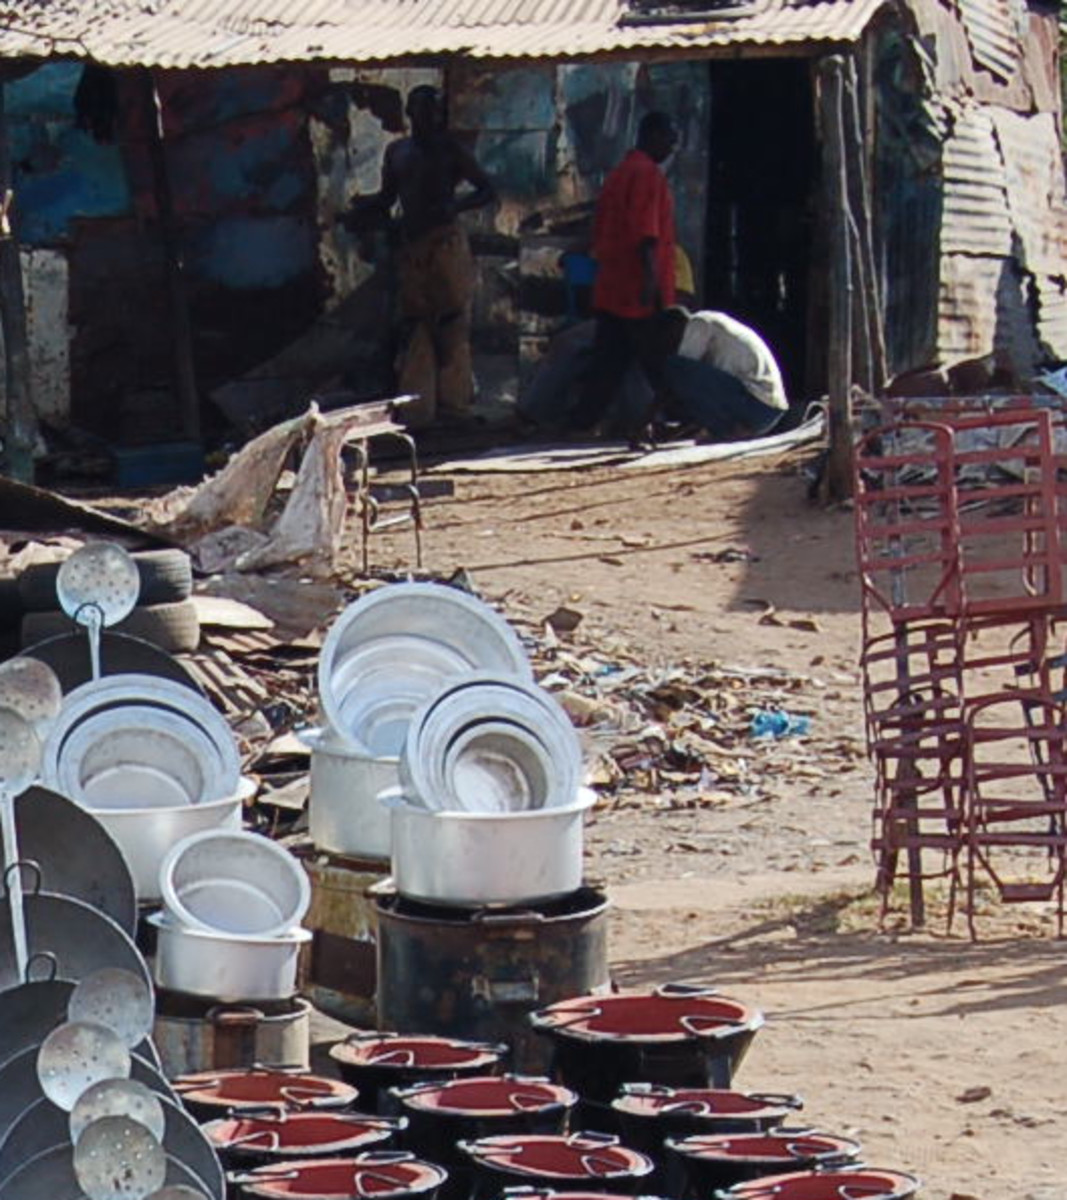 kibuye and oile markets